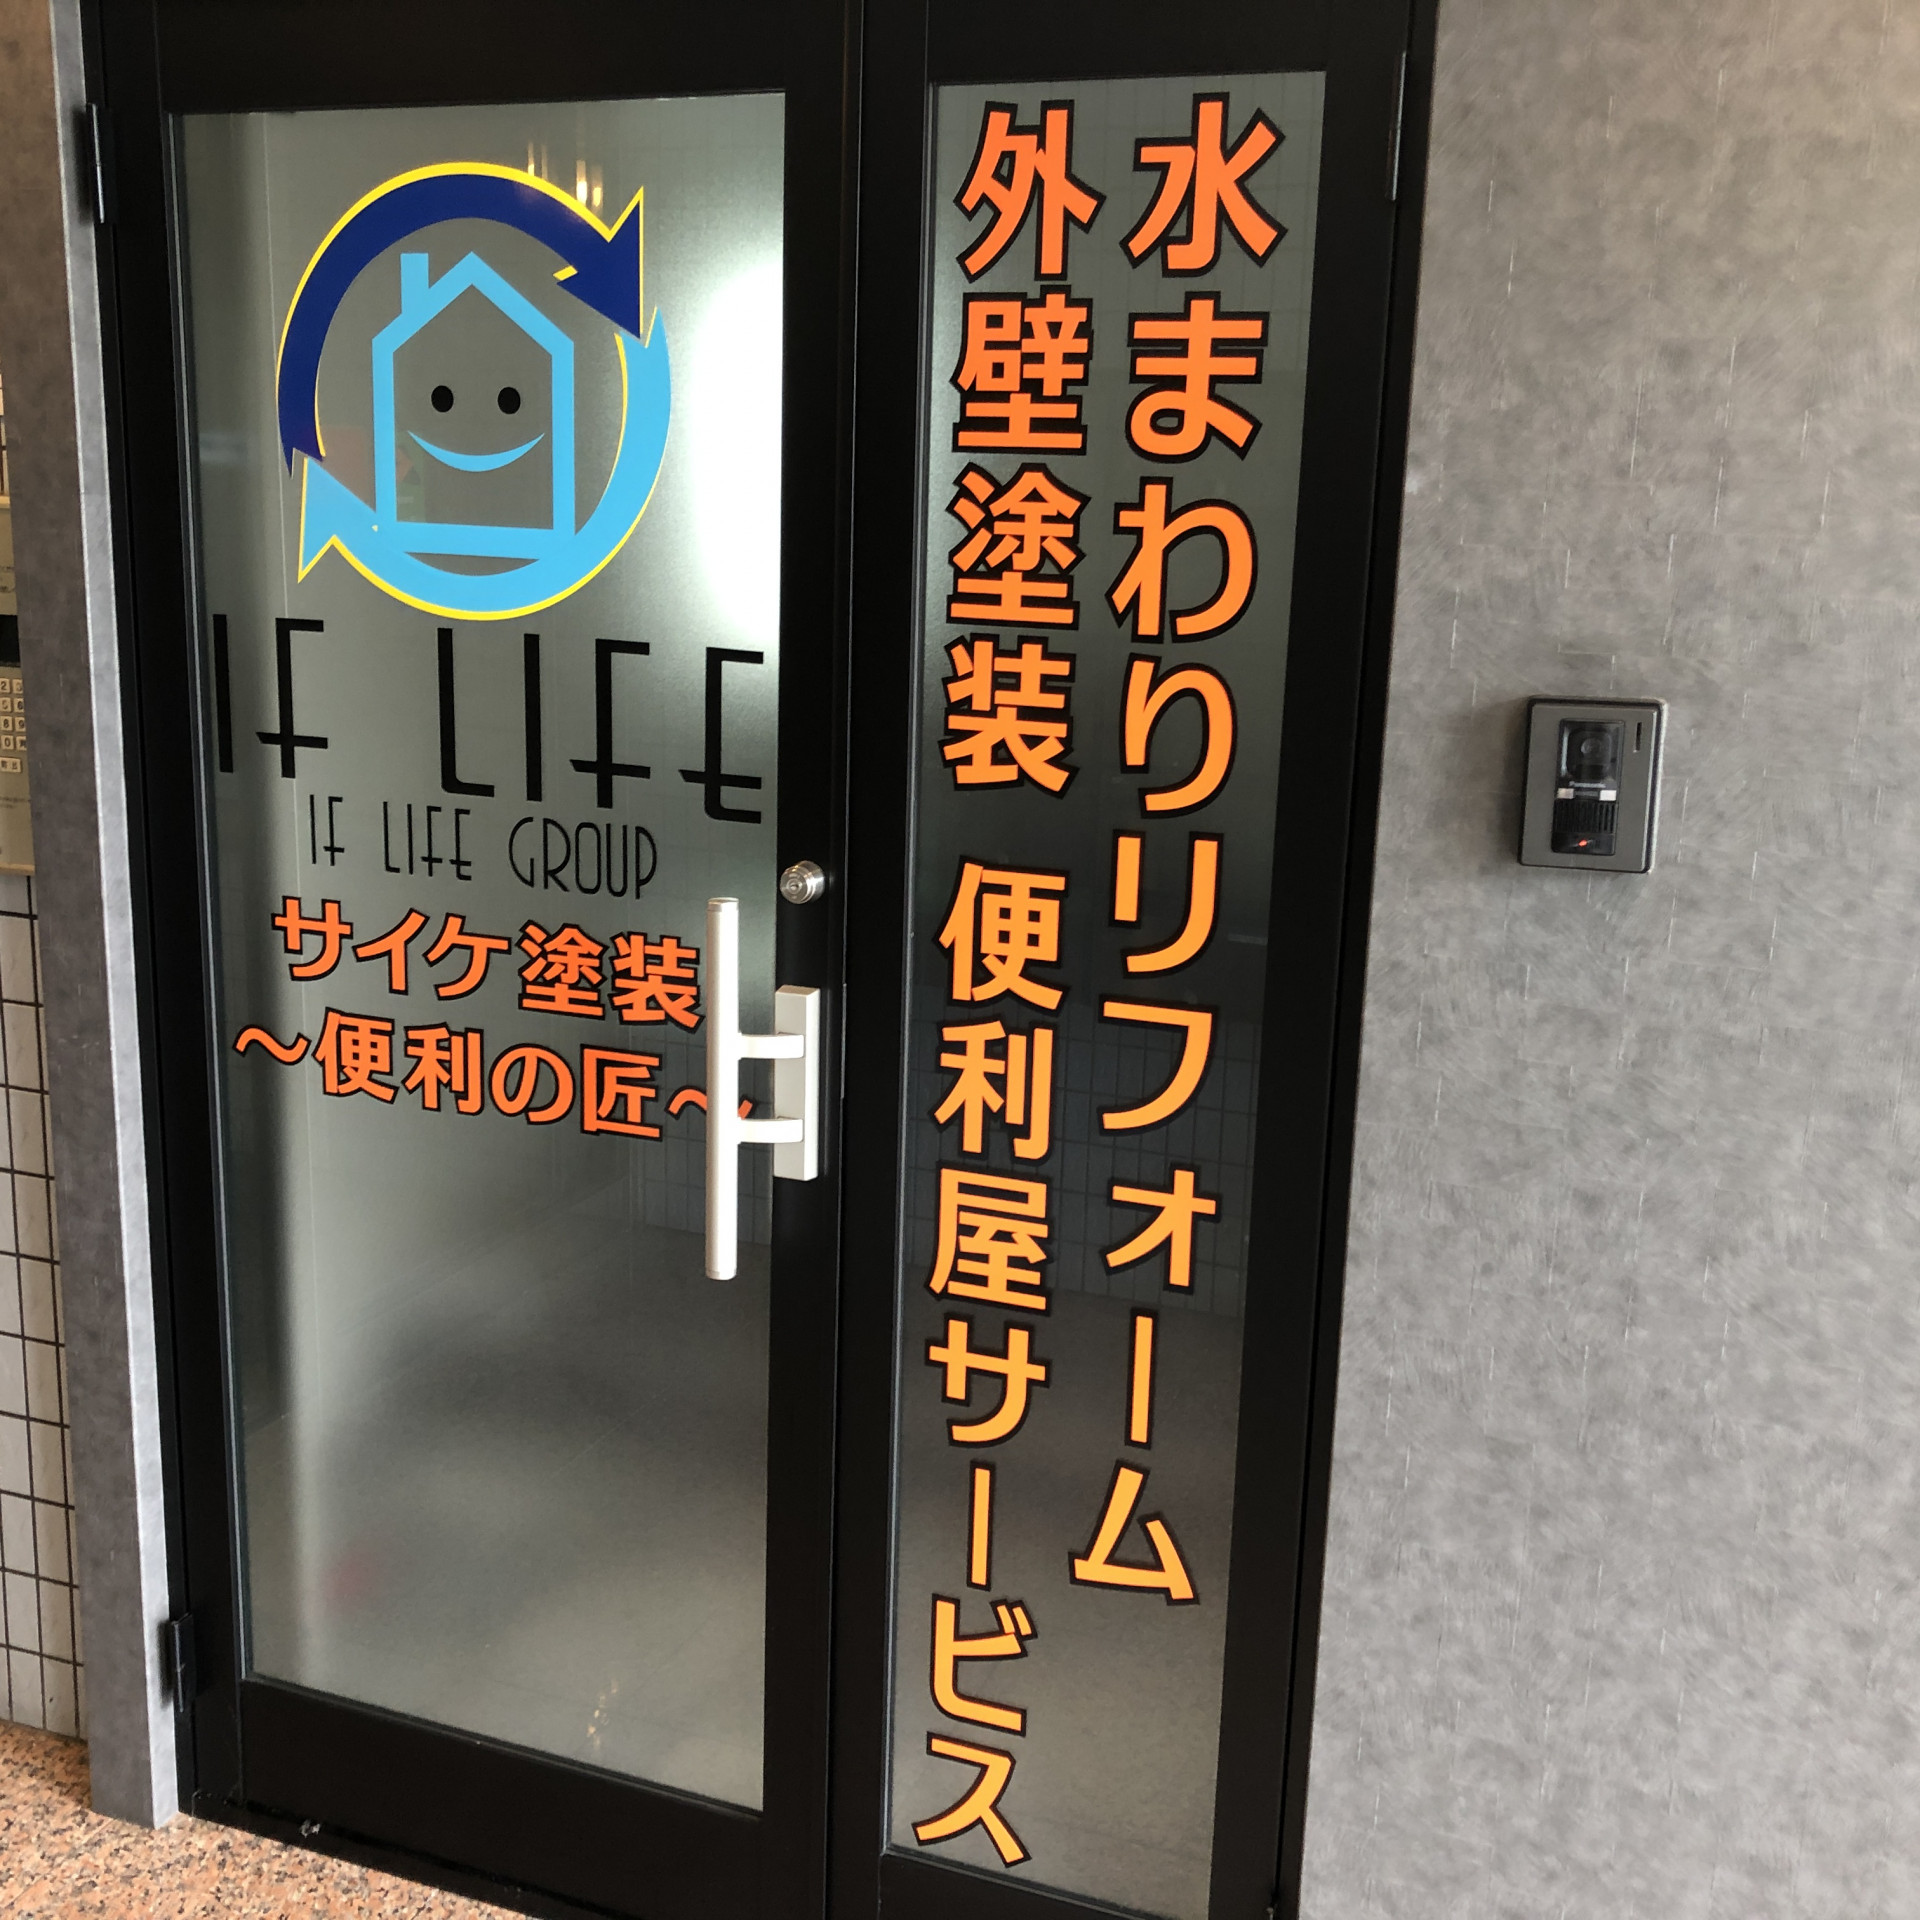 新事務所オープン伴い堺市外壁塗装、水まわりリフォーム相談会開始。